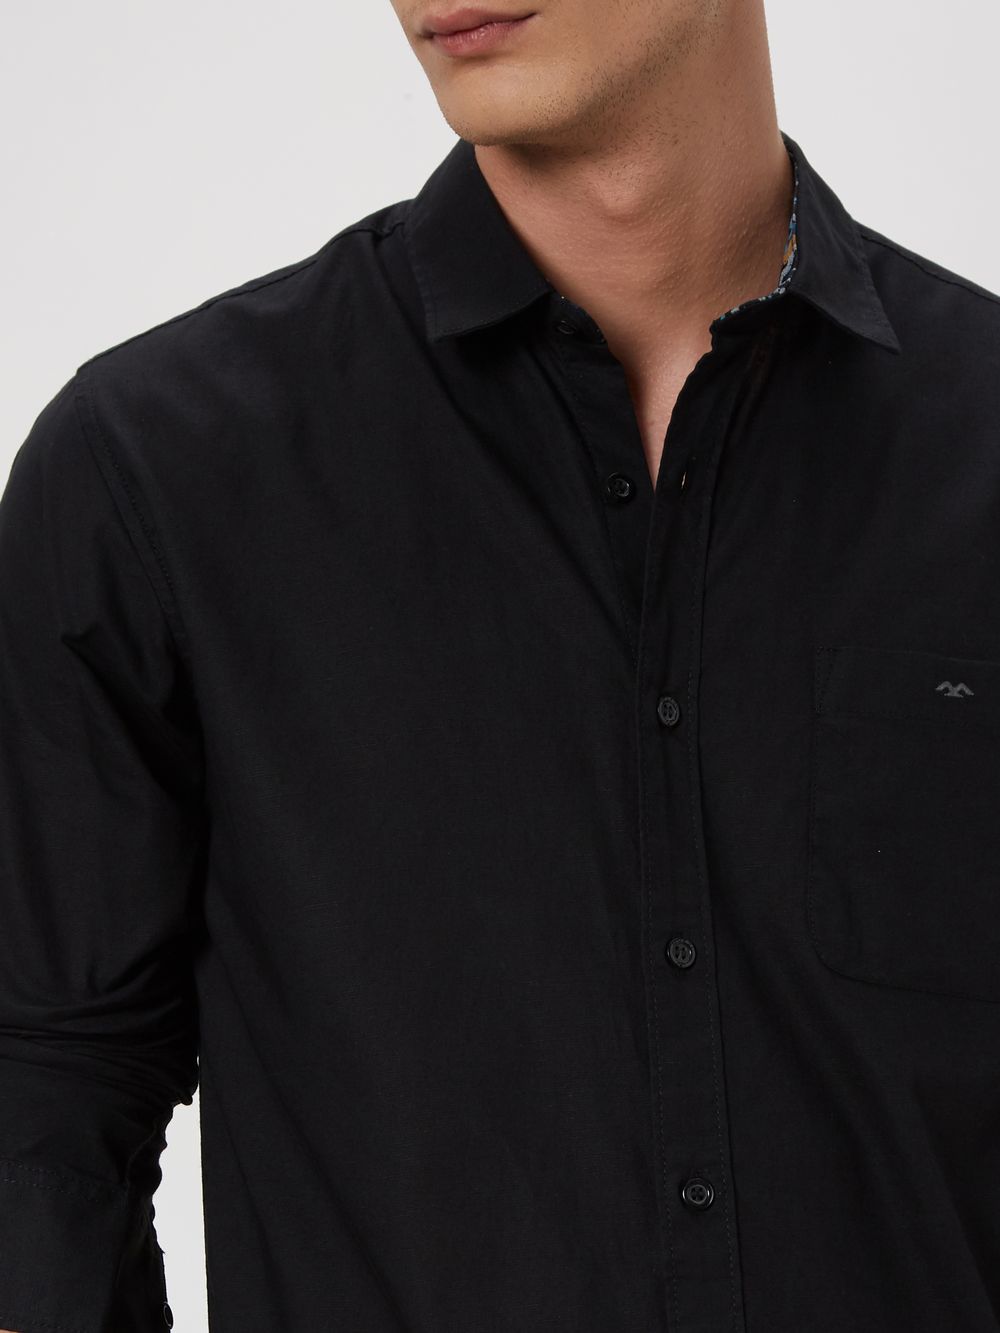 Black Cotton Linen Plain Shirt 